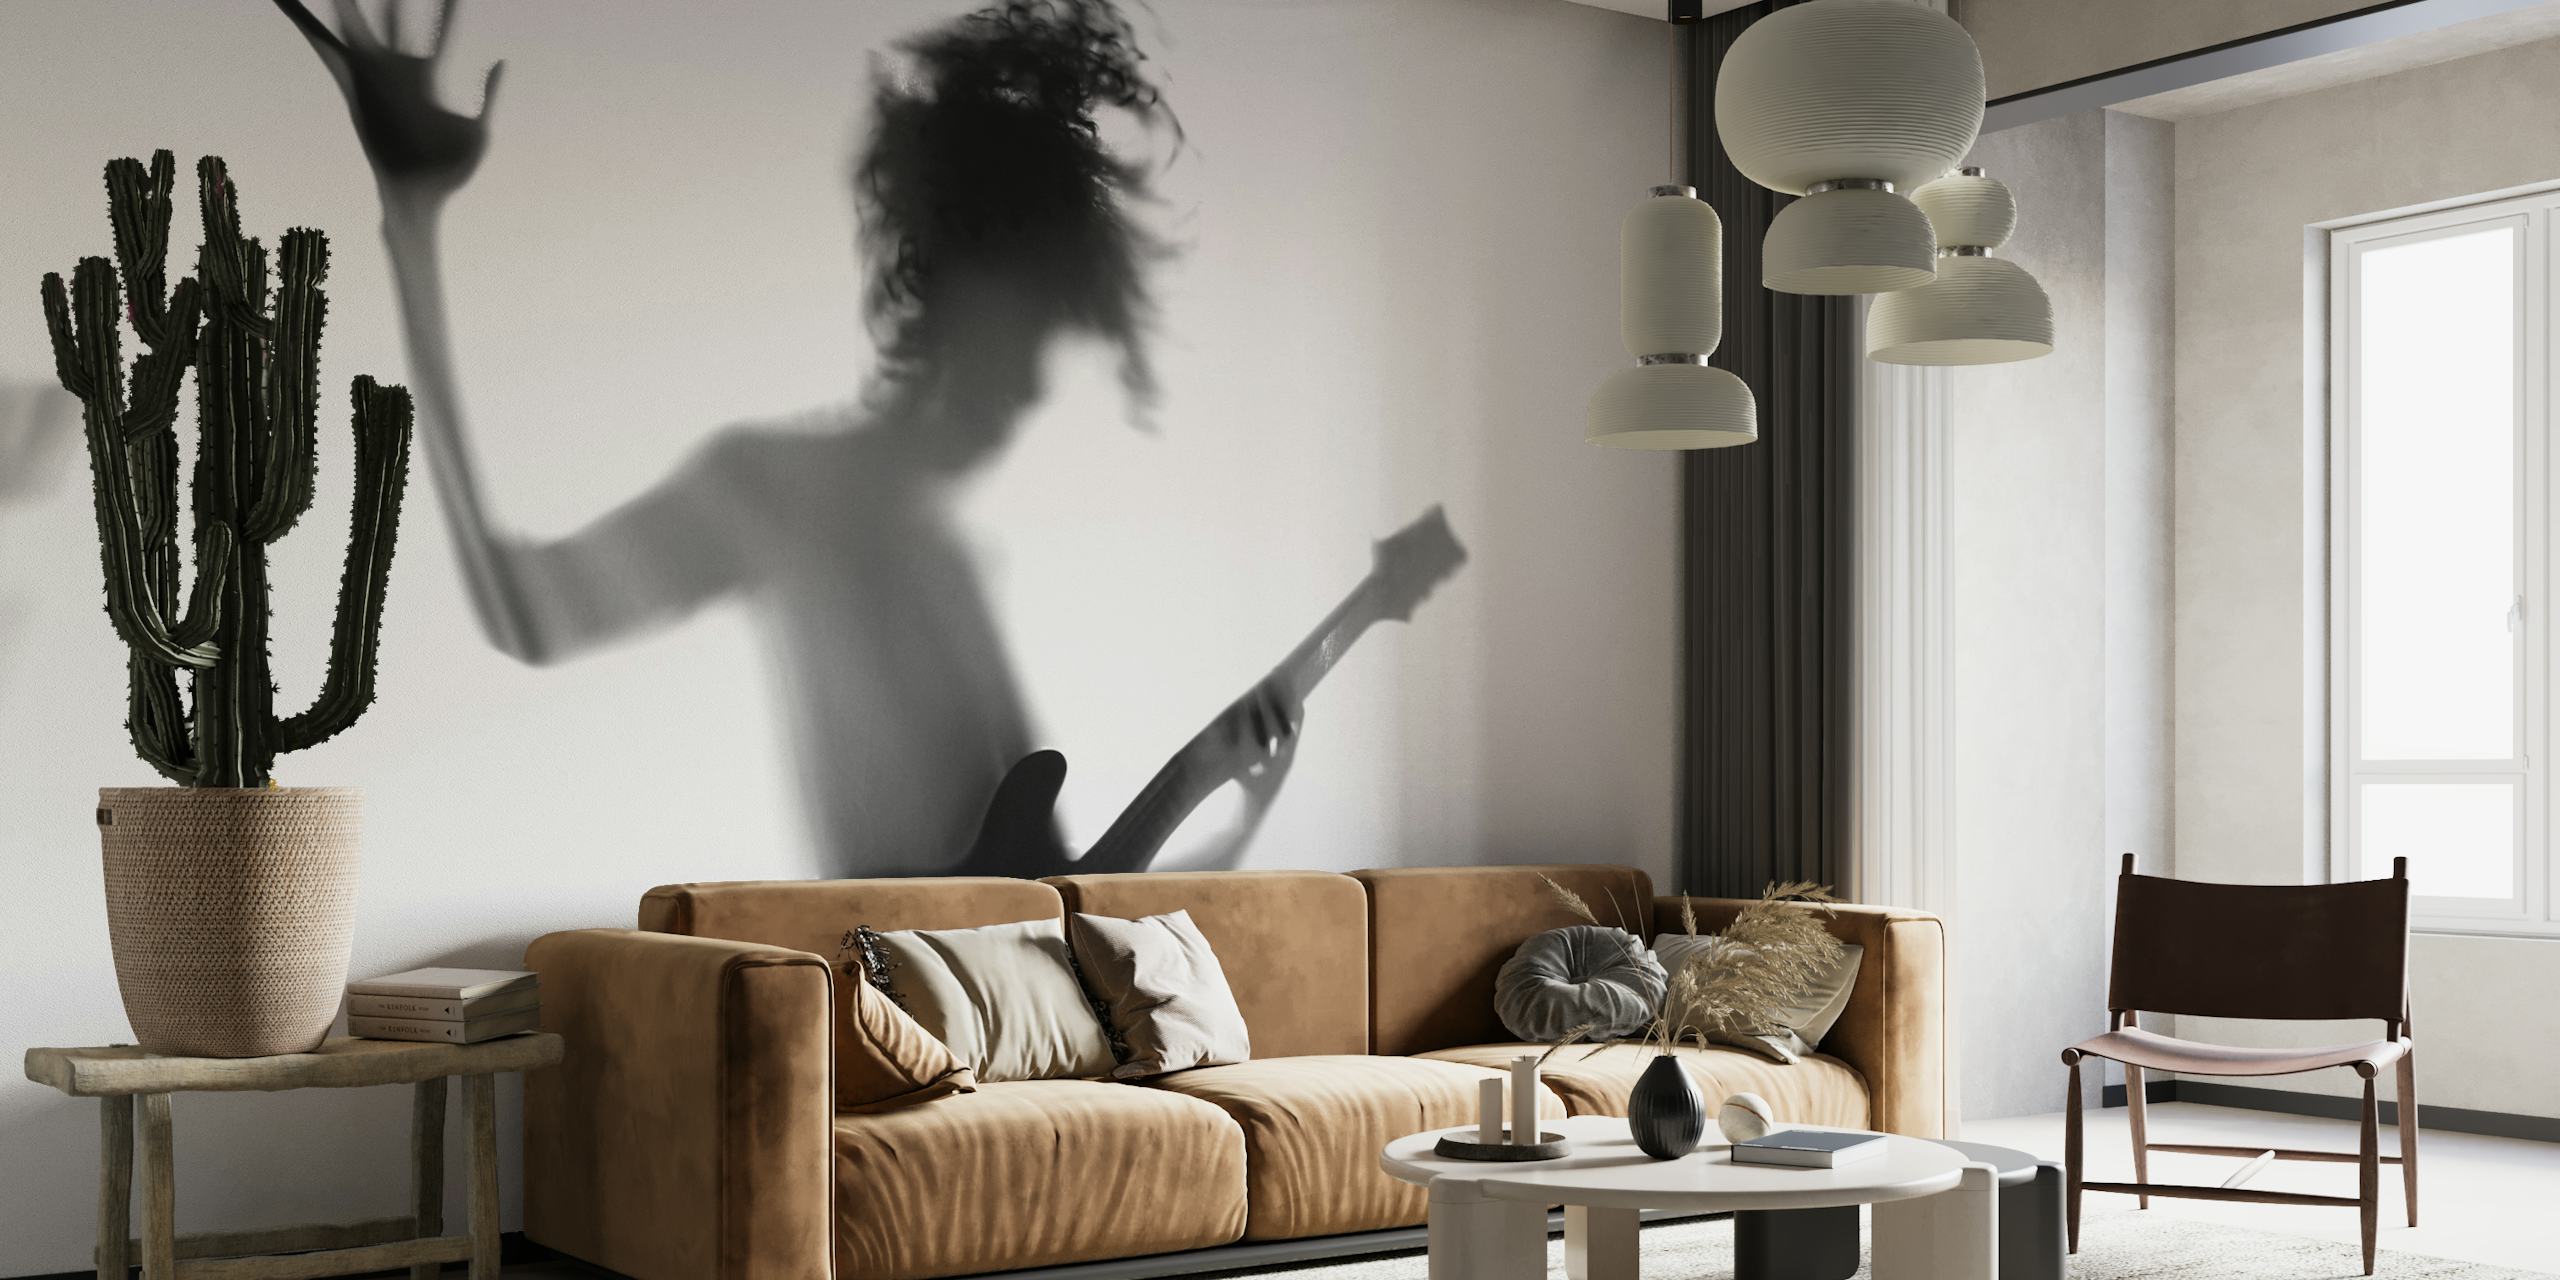 Silhouette d'une personne jouant de la guitare dans une pose dynamique en noir et blanc.